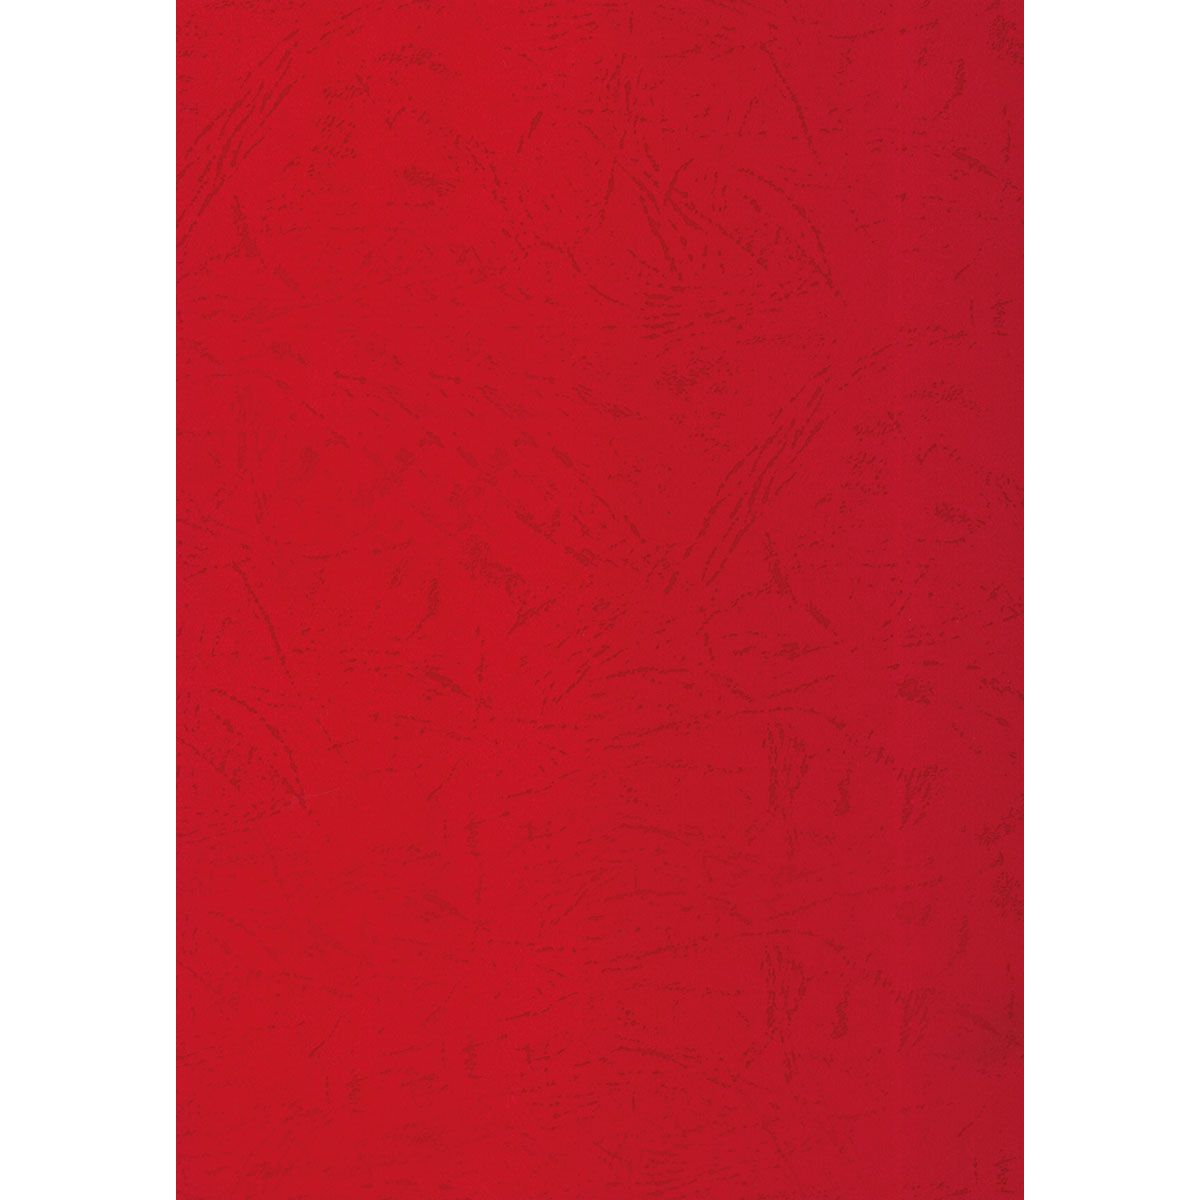 Karton do bindowania skóropodobny A4 czerwony 250g Titanum